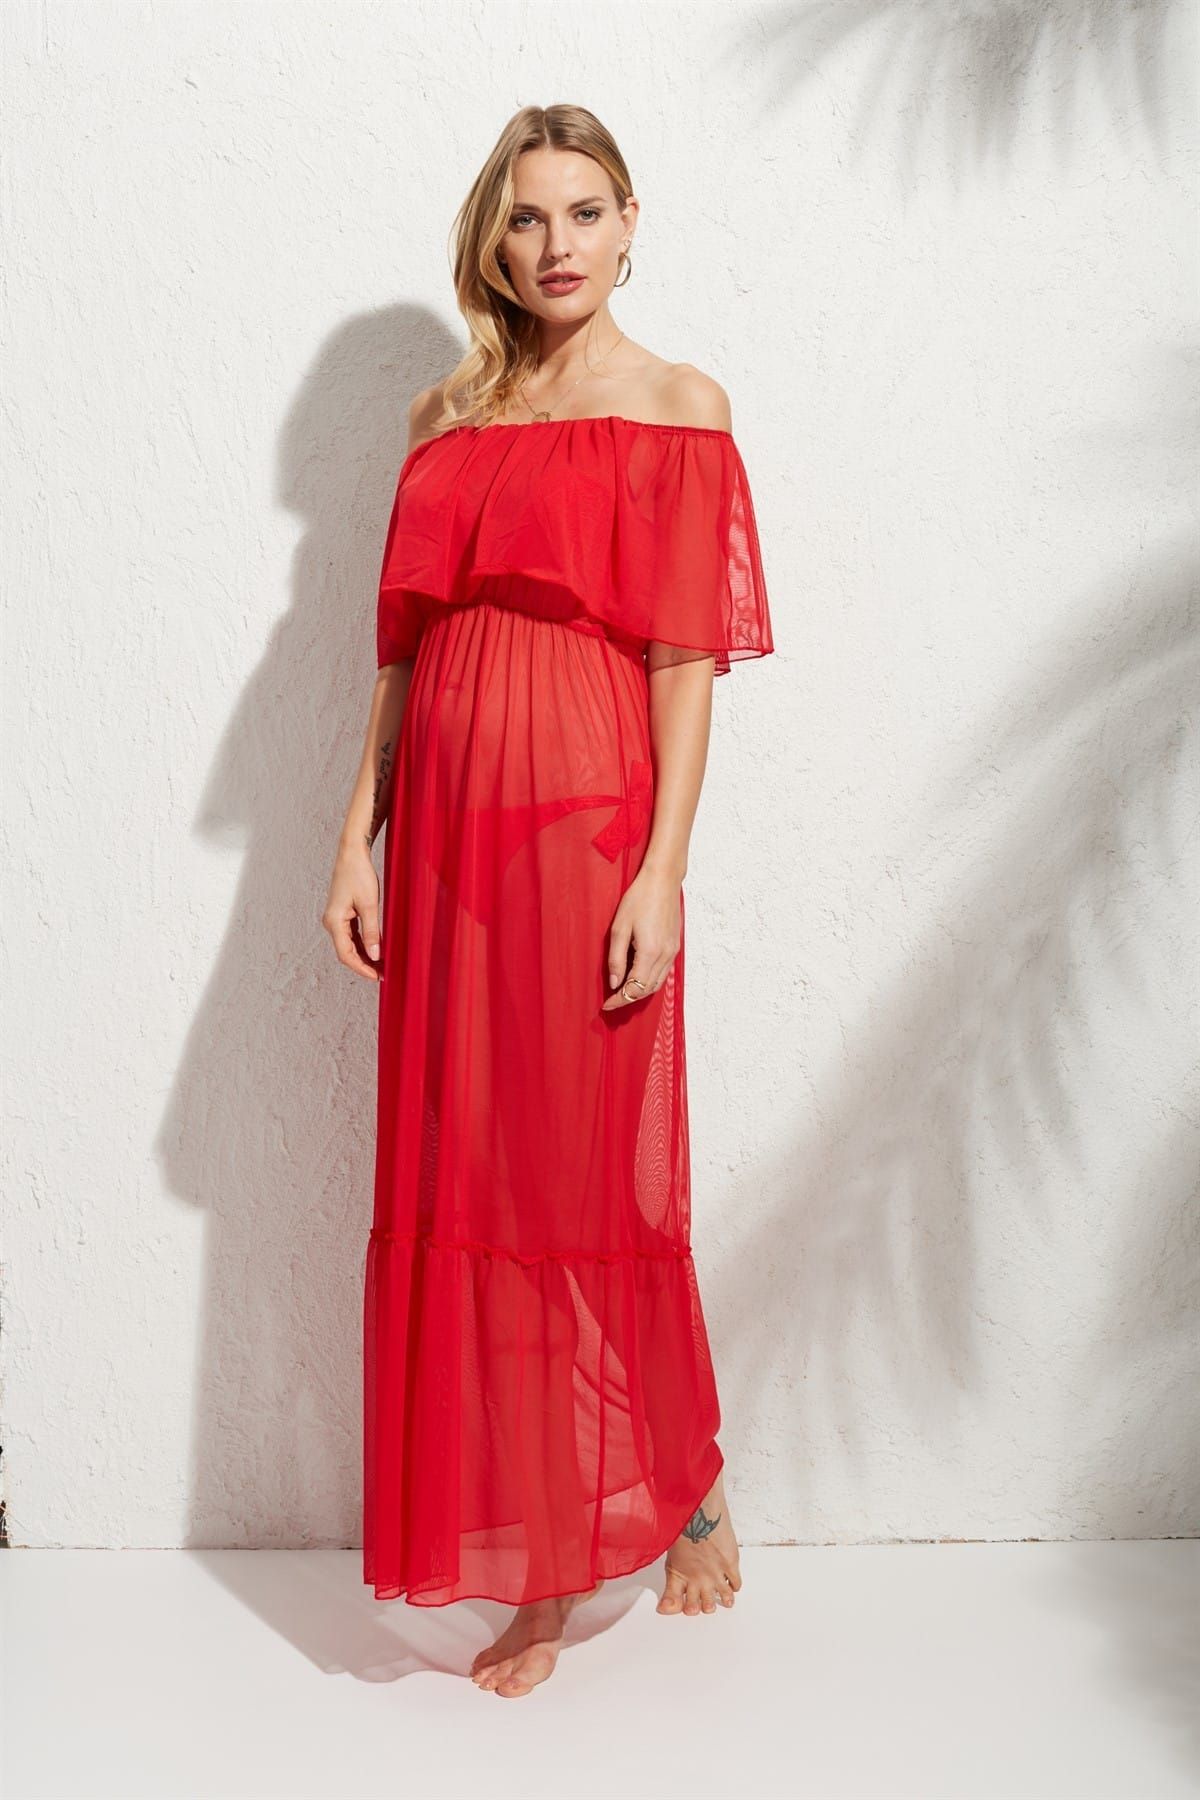 Pierre Cardin Kadın Kırmızı İspanyol Elbise Pareo 181833 181833